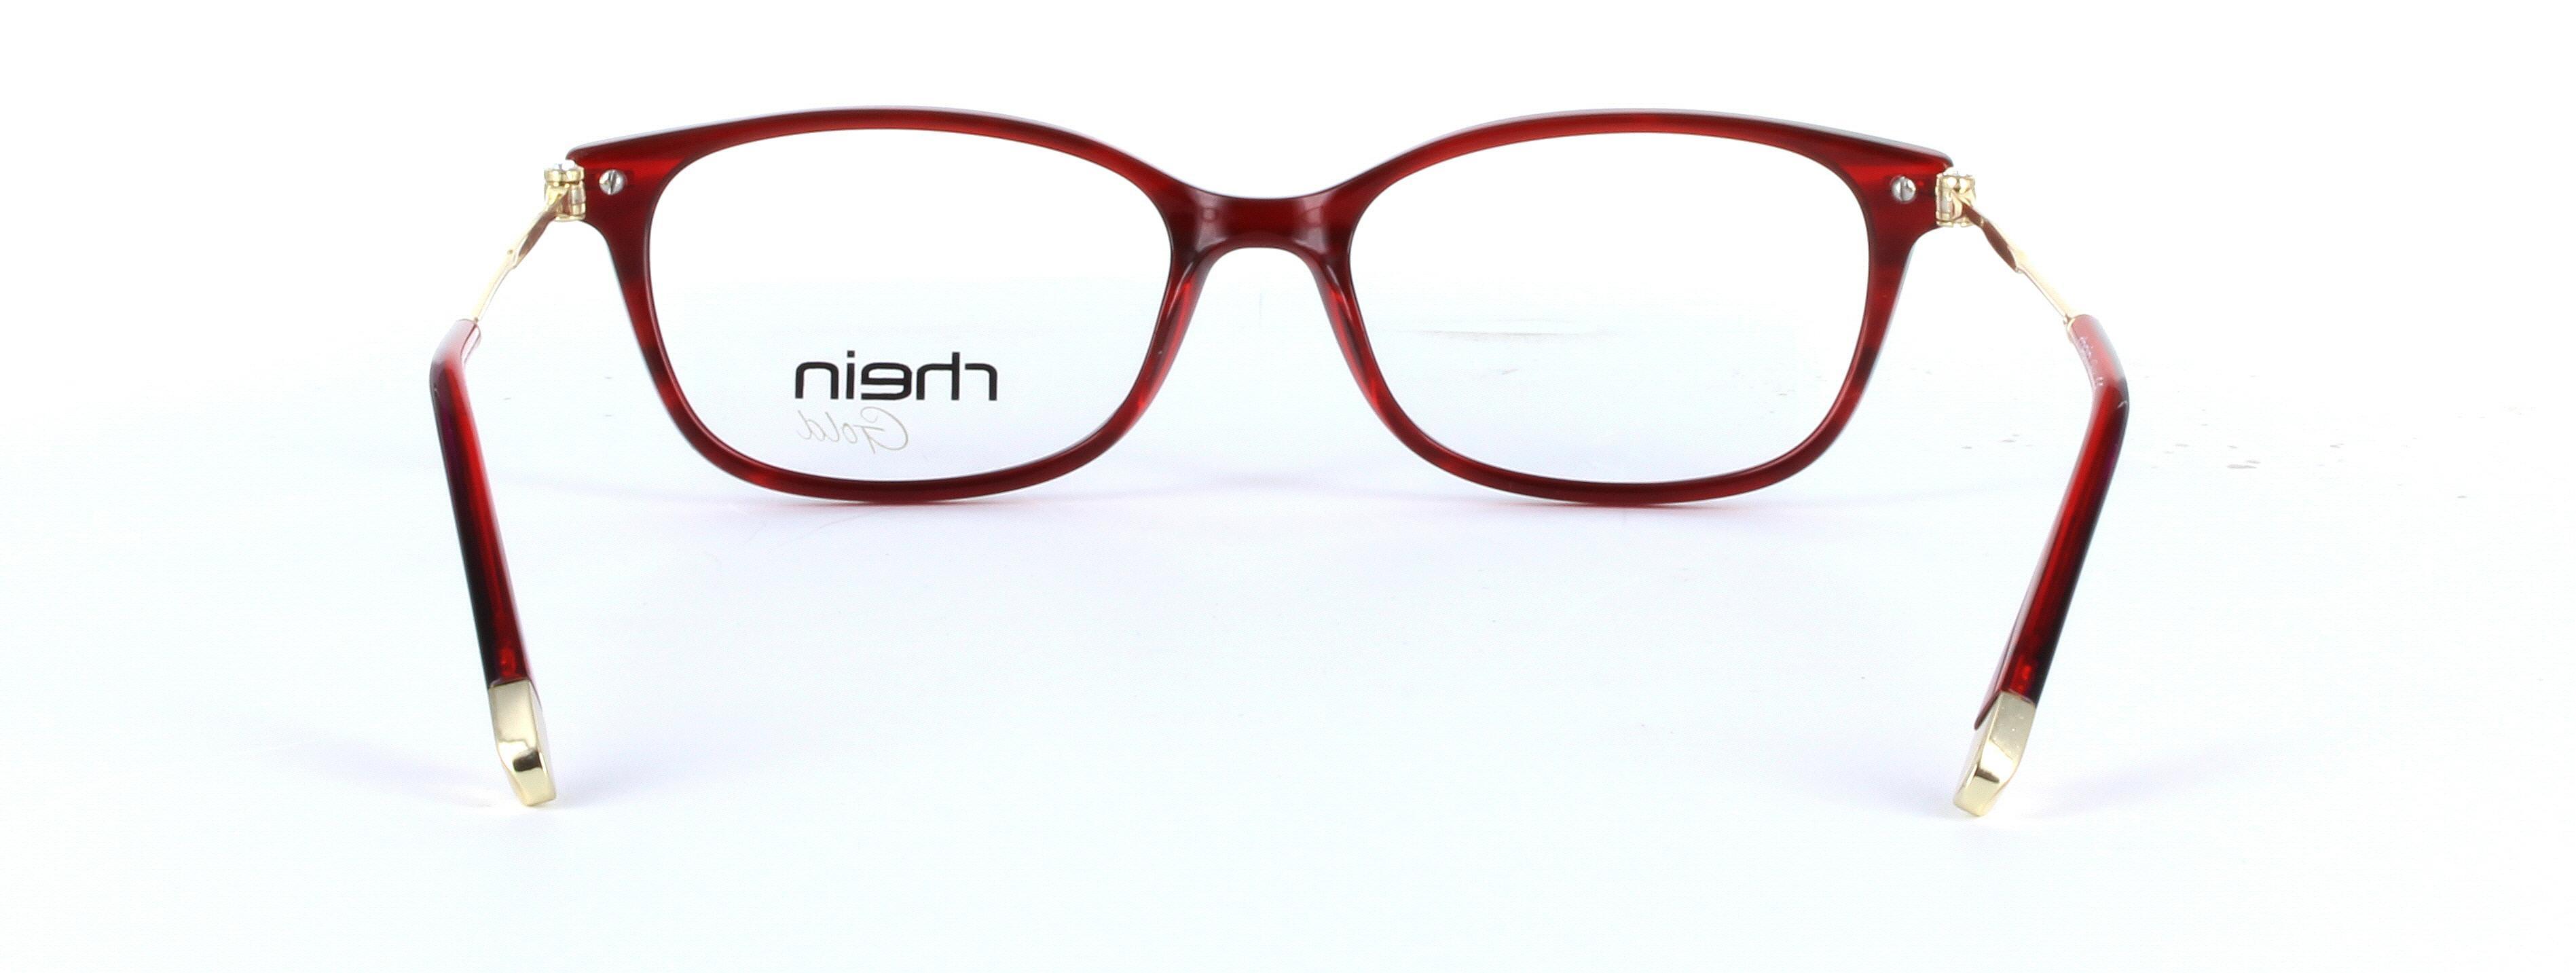 Locarno Red Full Rim Oval Plastic Glasses - Image View 3